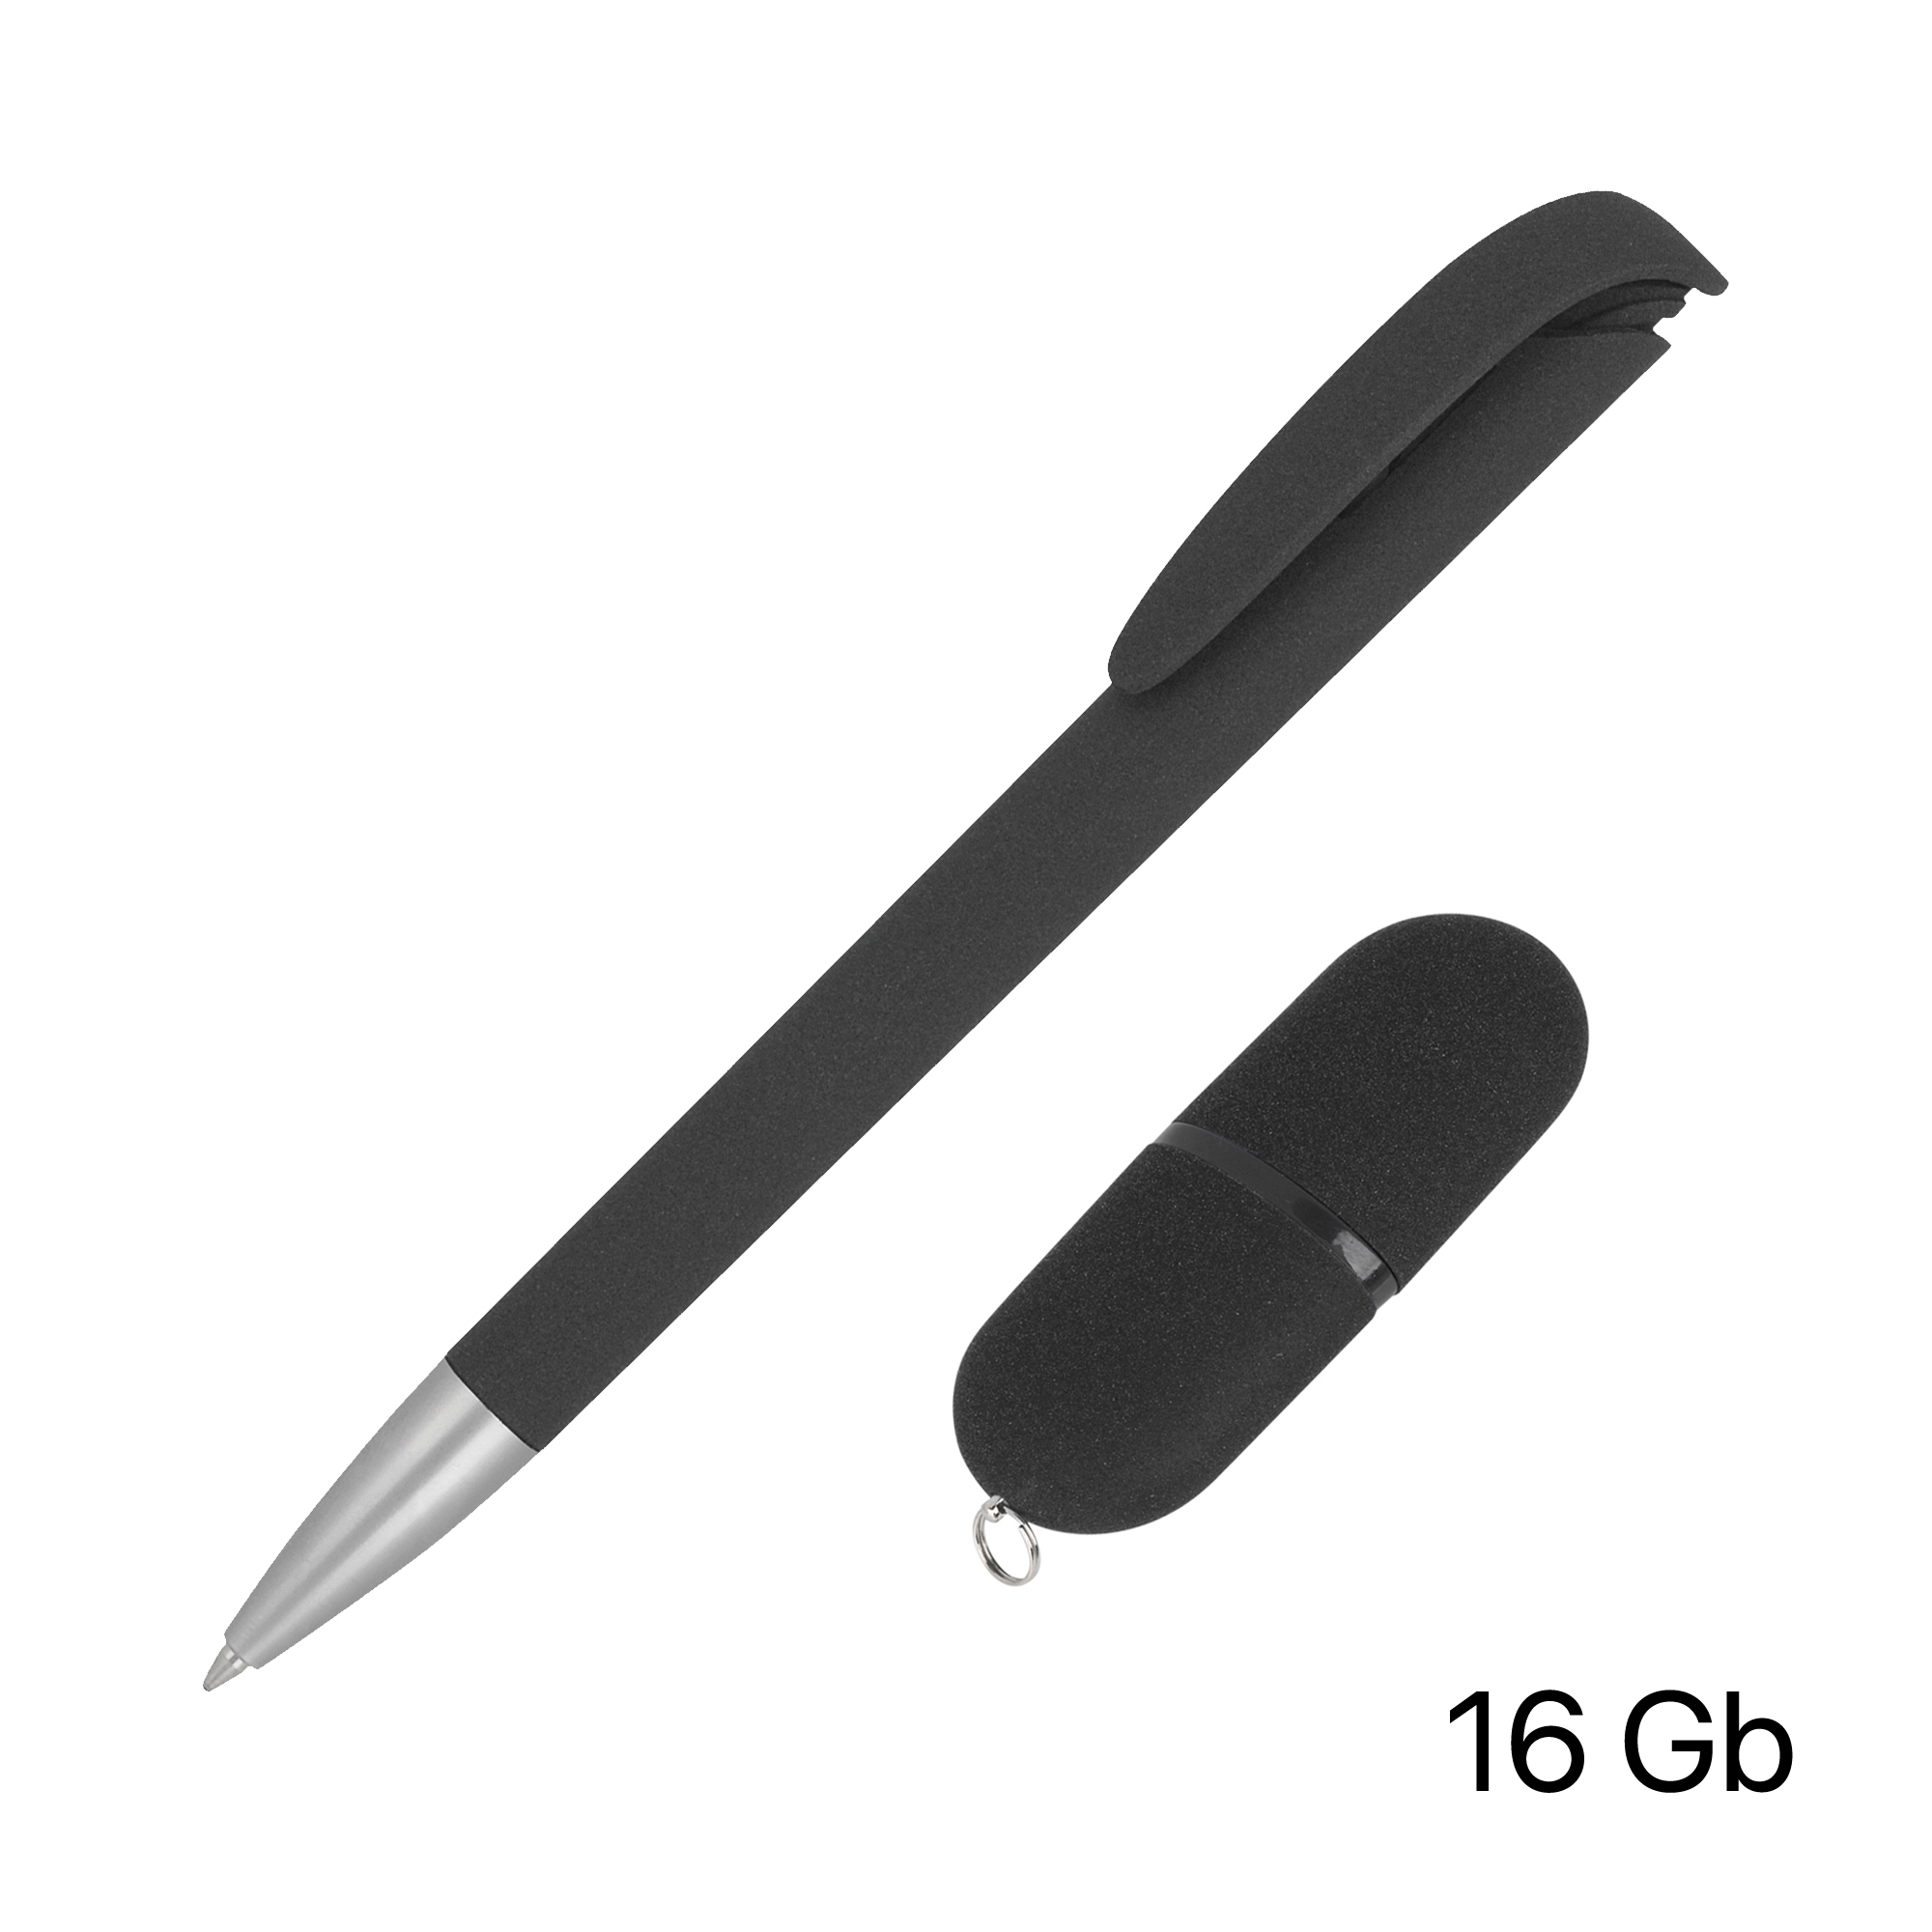 Набор ручка + флеш-карта 16 Гб в футляре, черный, покрытие soft grip, черный, пластик/soft grip